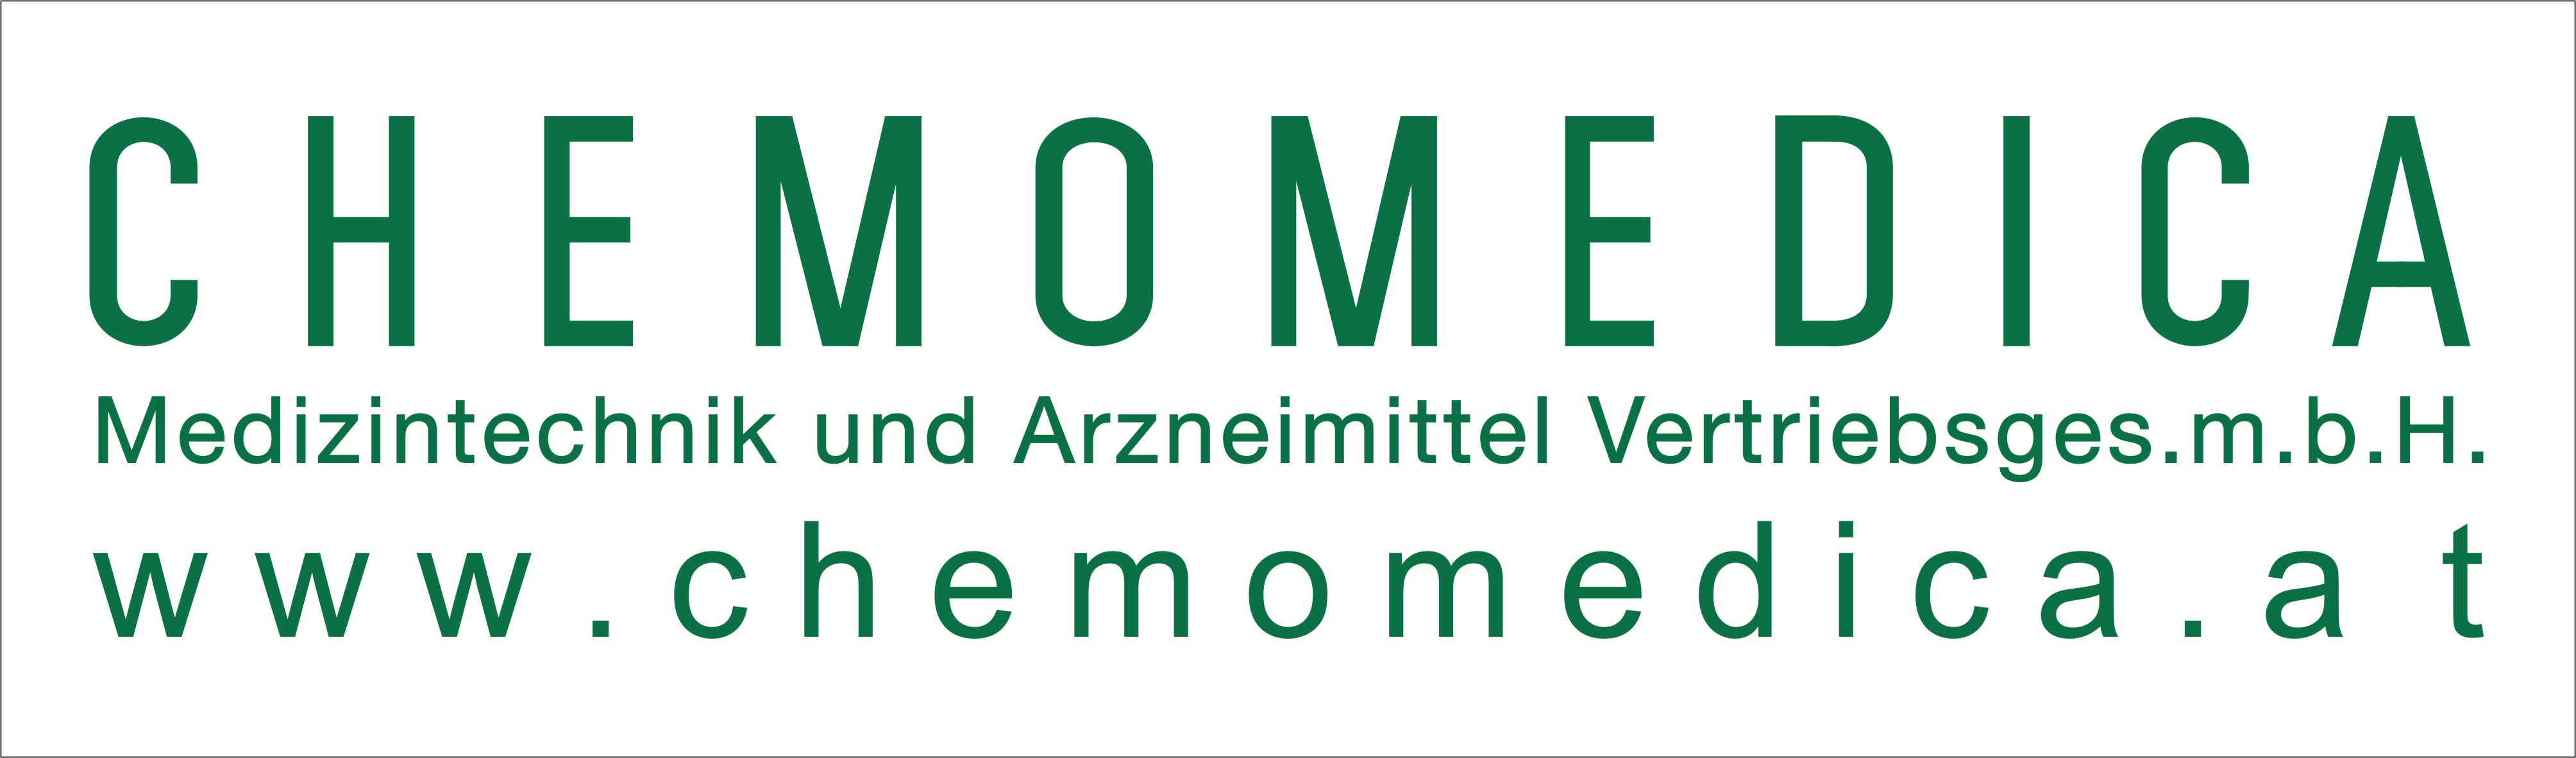 Sponsor Chemomedica Medzintechnik und Arzneimittel Vertriebsges.m.b.H